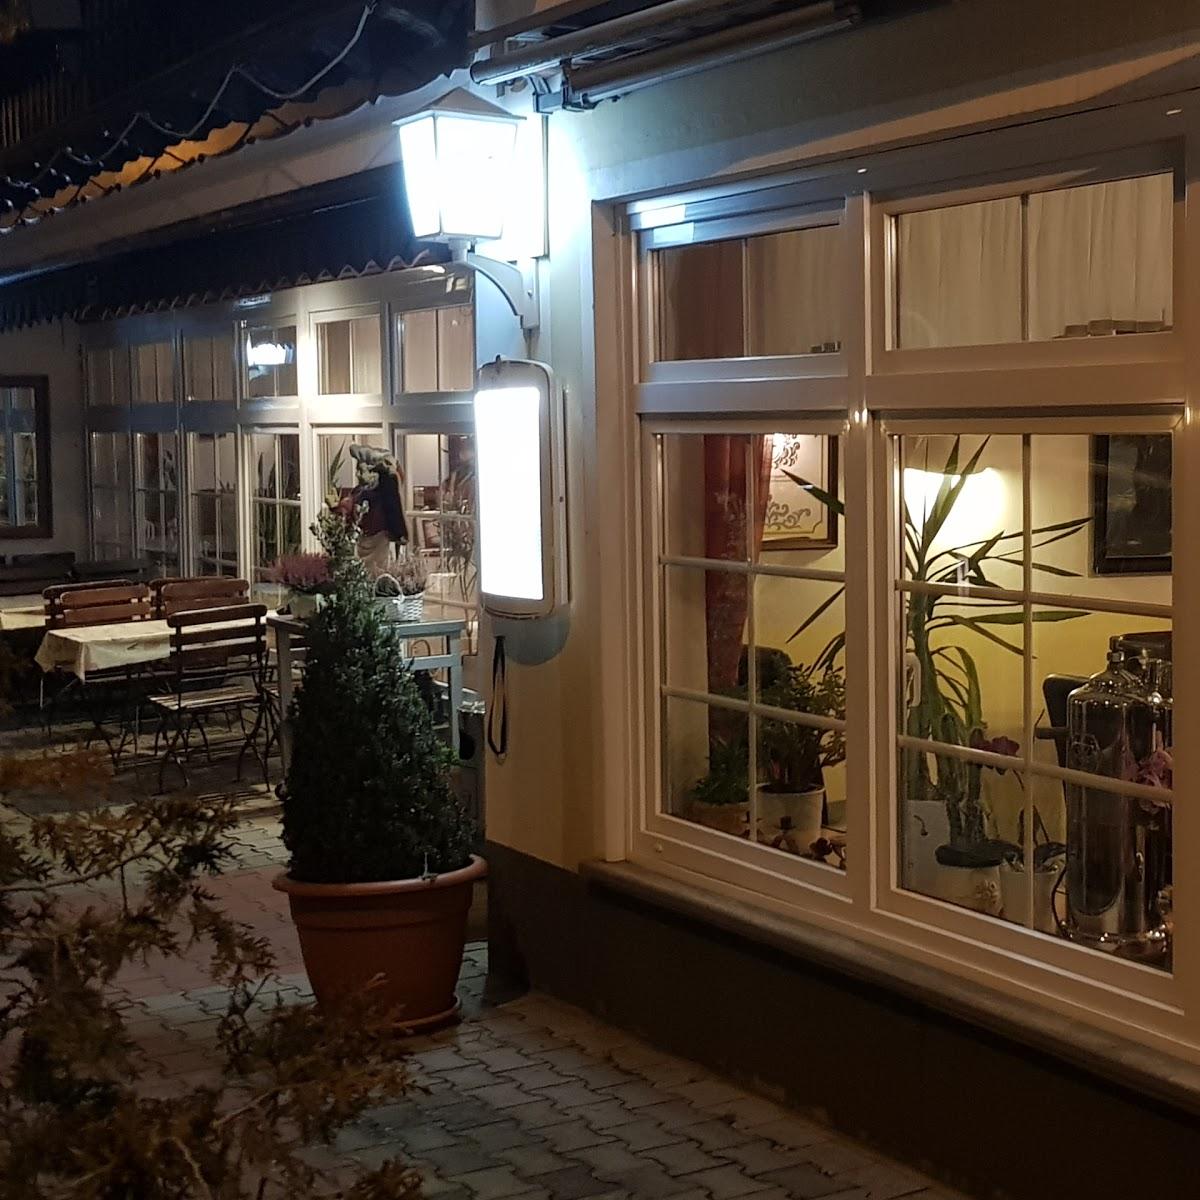 Restaurant "Balkanland" in  Stadtkyll